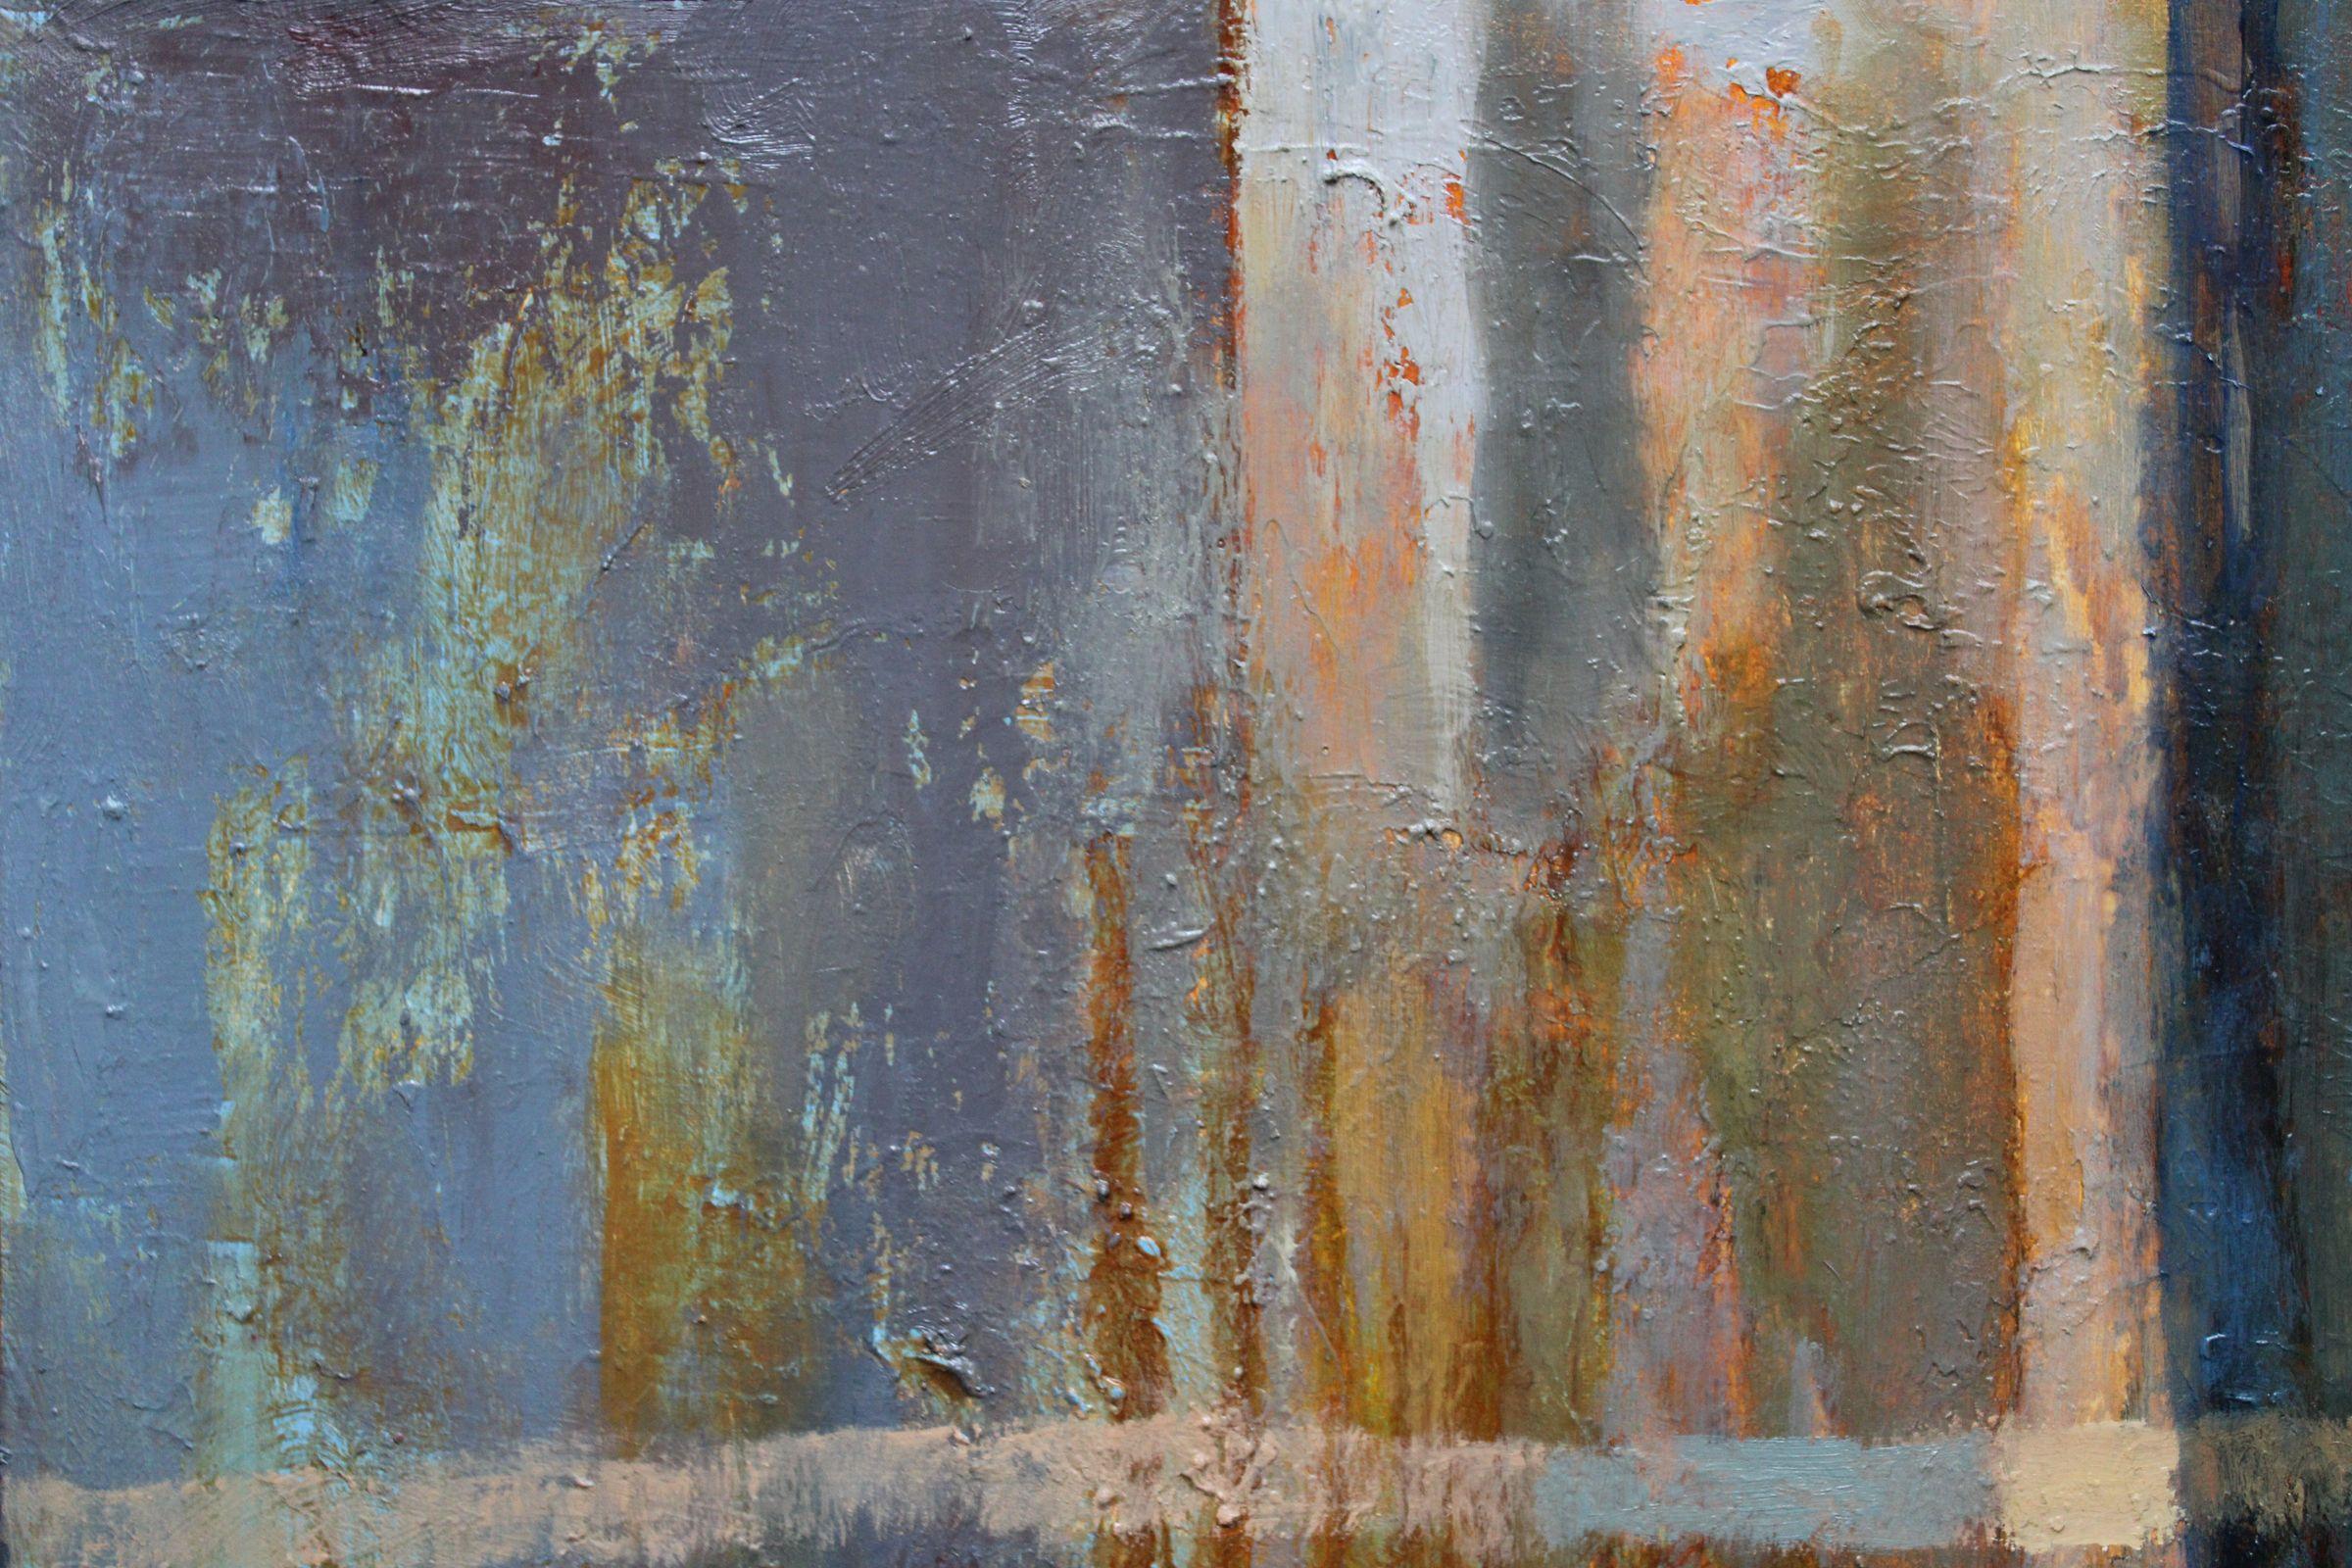 Quiet water sound. 2018, Leinwand, Öl, 63x128 cm
Abstrakte Komposition in Erdfarben

Igor Leontiev (1957) - einer der führenden unabhängigen Maler in Lettland

Geboren in Riga, Lettland.
Er studierte an der Kunstschule von Rozental, an der